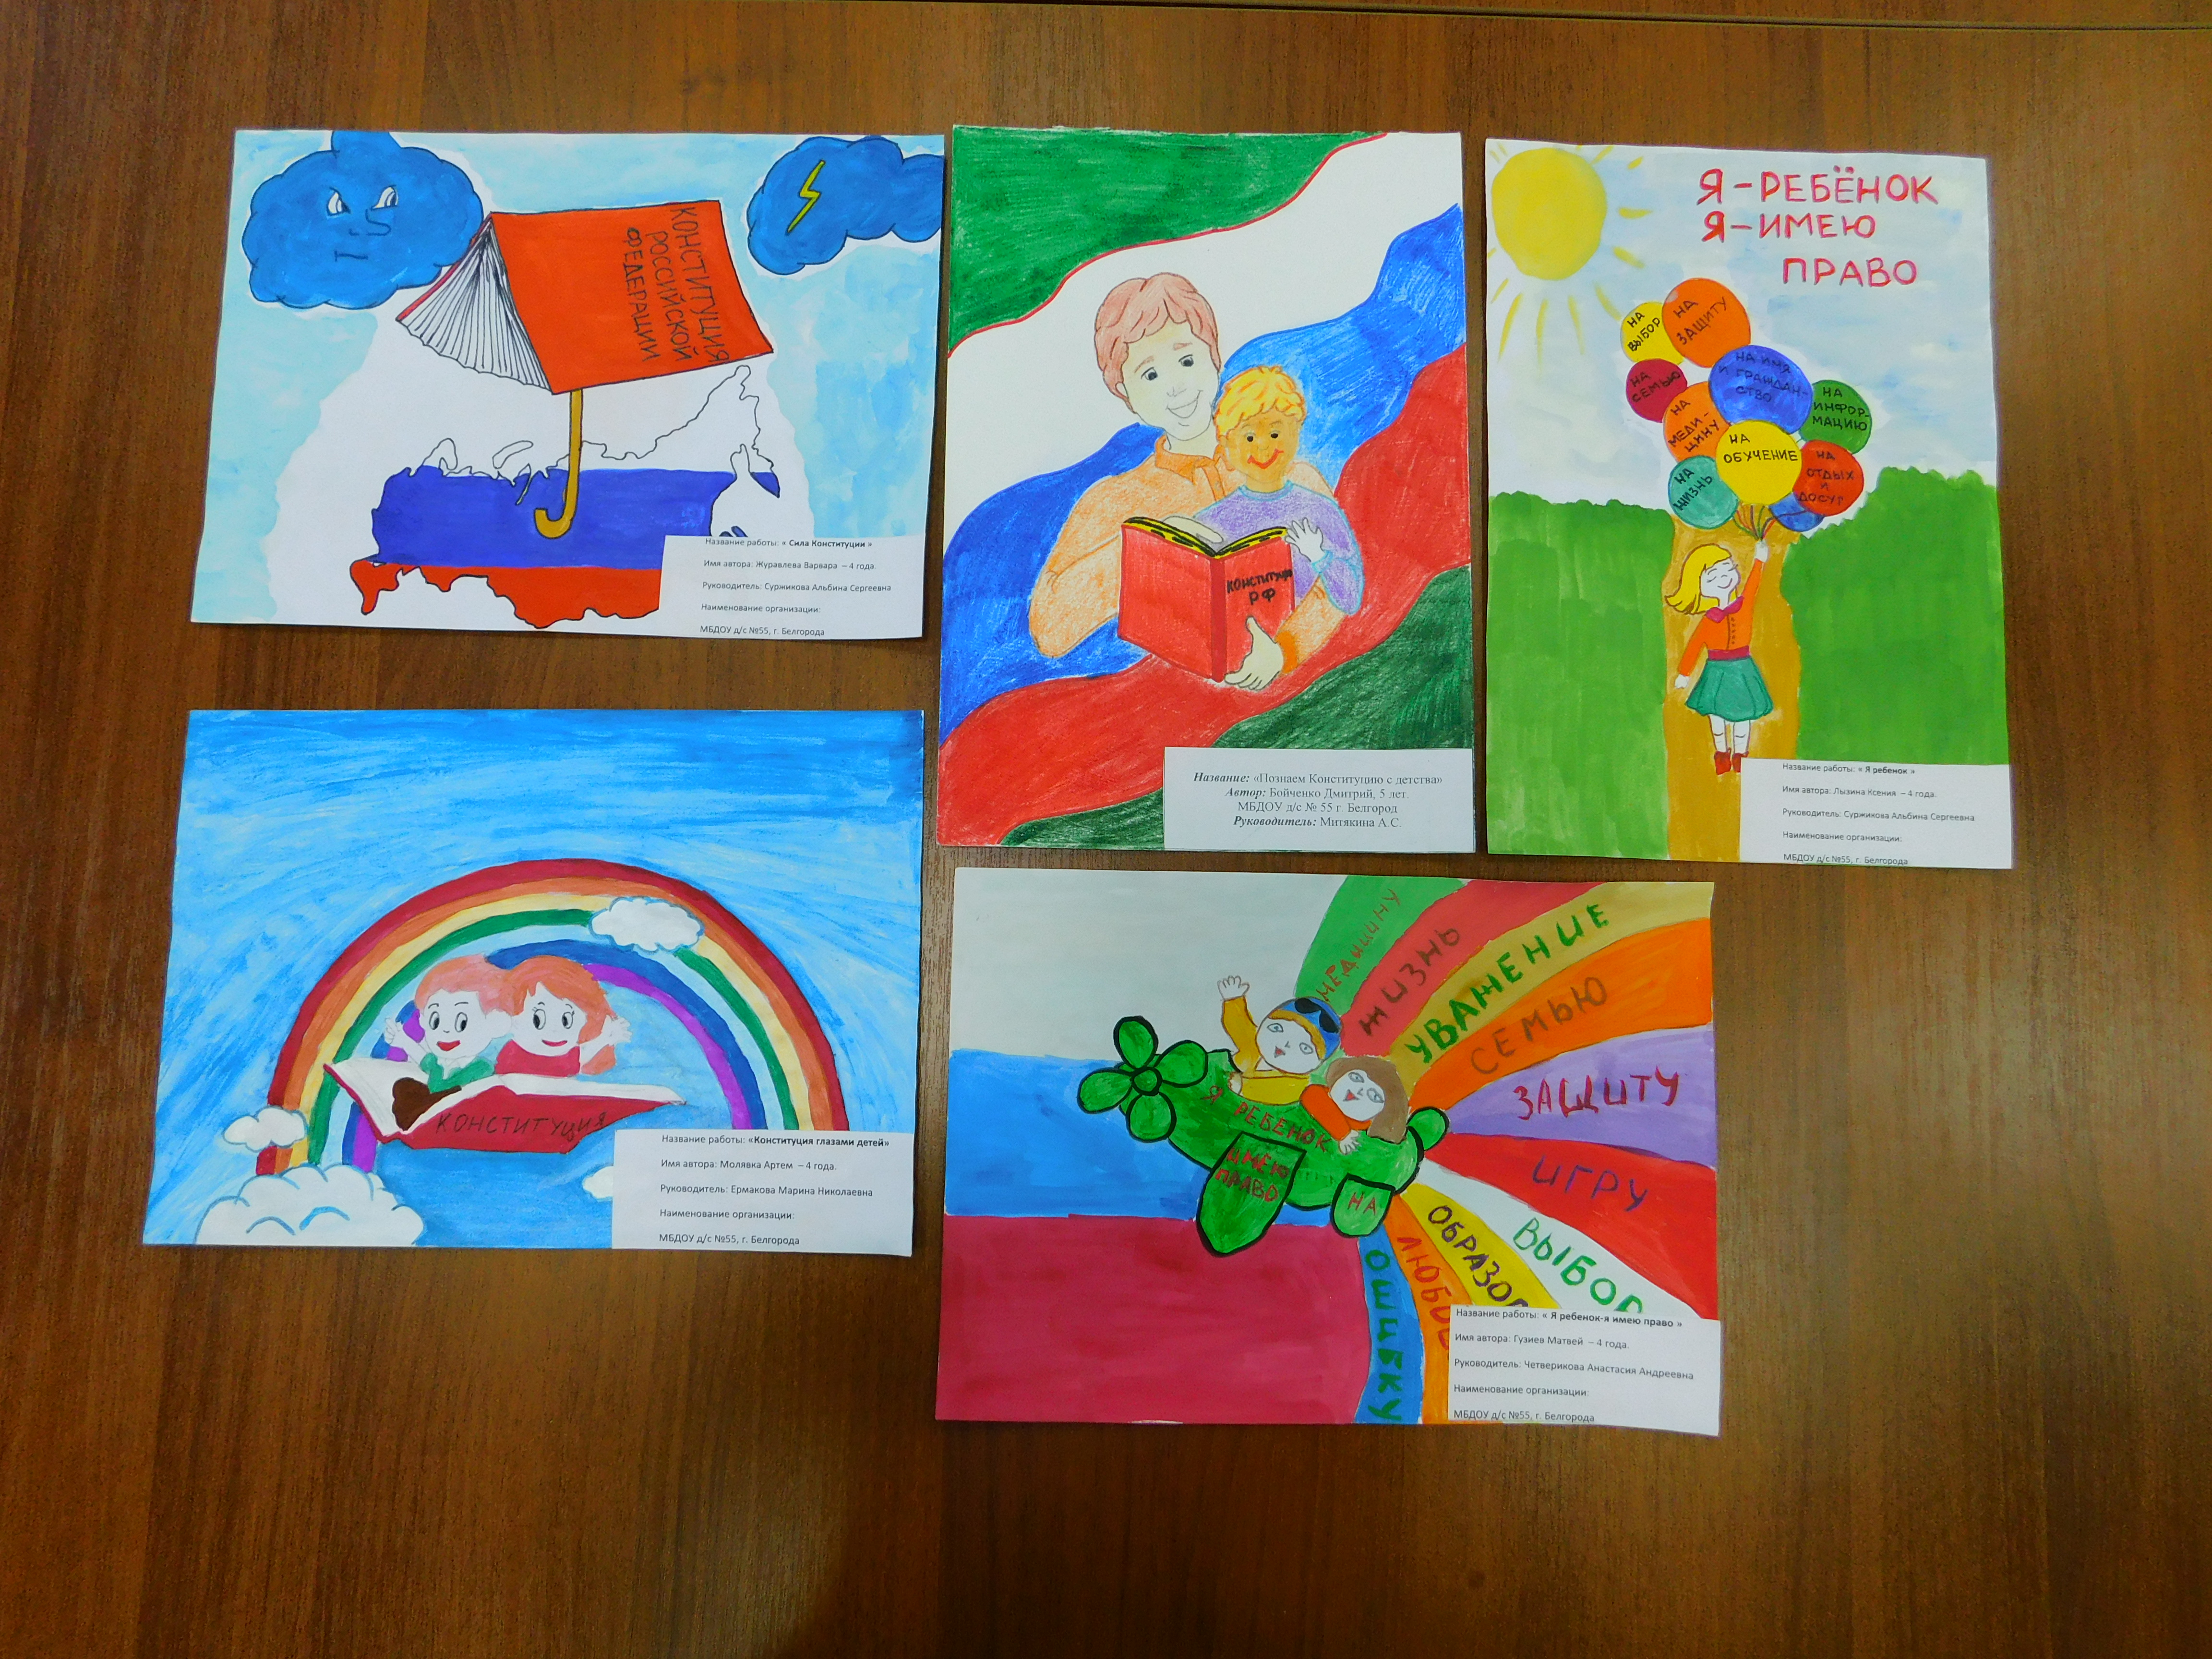 День конституции российской федерации рисунок детей